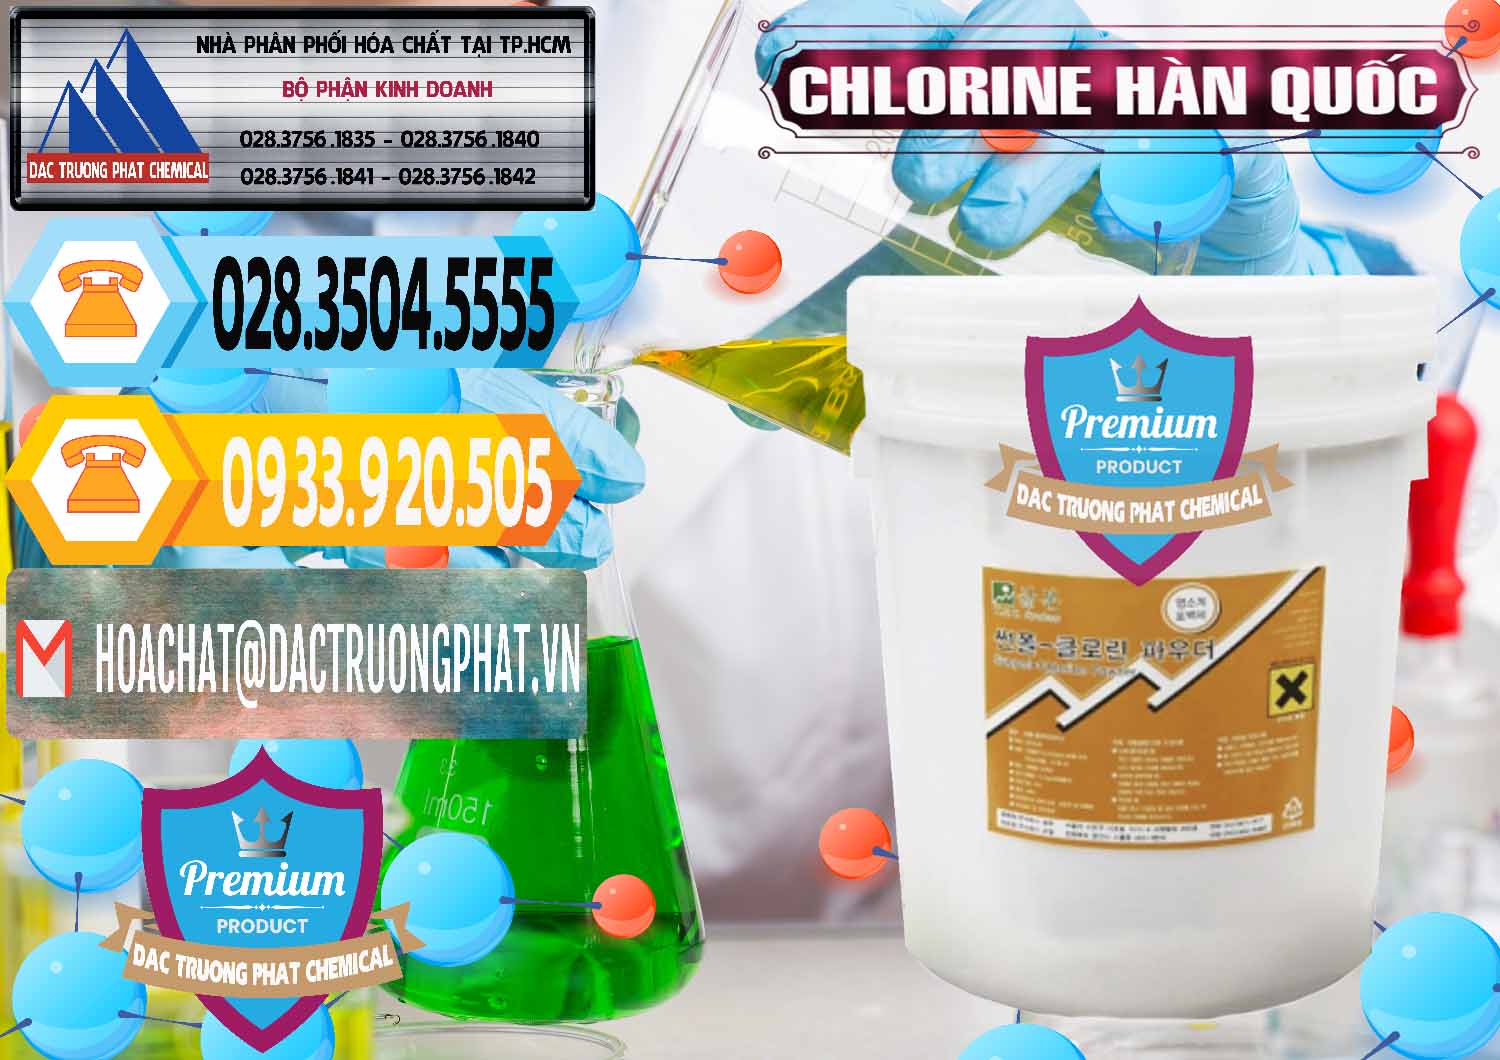 Nơi cung ứng & bán Chlorine – Clorin 70% Hàn Quốc Korea - 0345 - Nơi cung cấp và nhập khẩu hóa chất tại TP.HCM - hoachattayrua.net